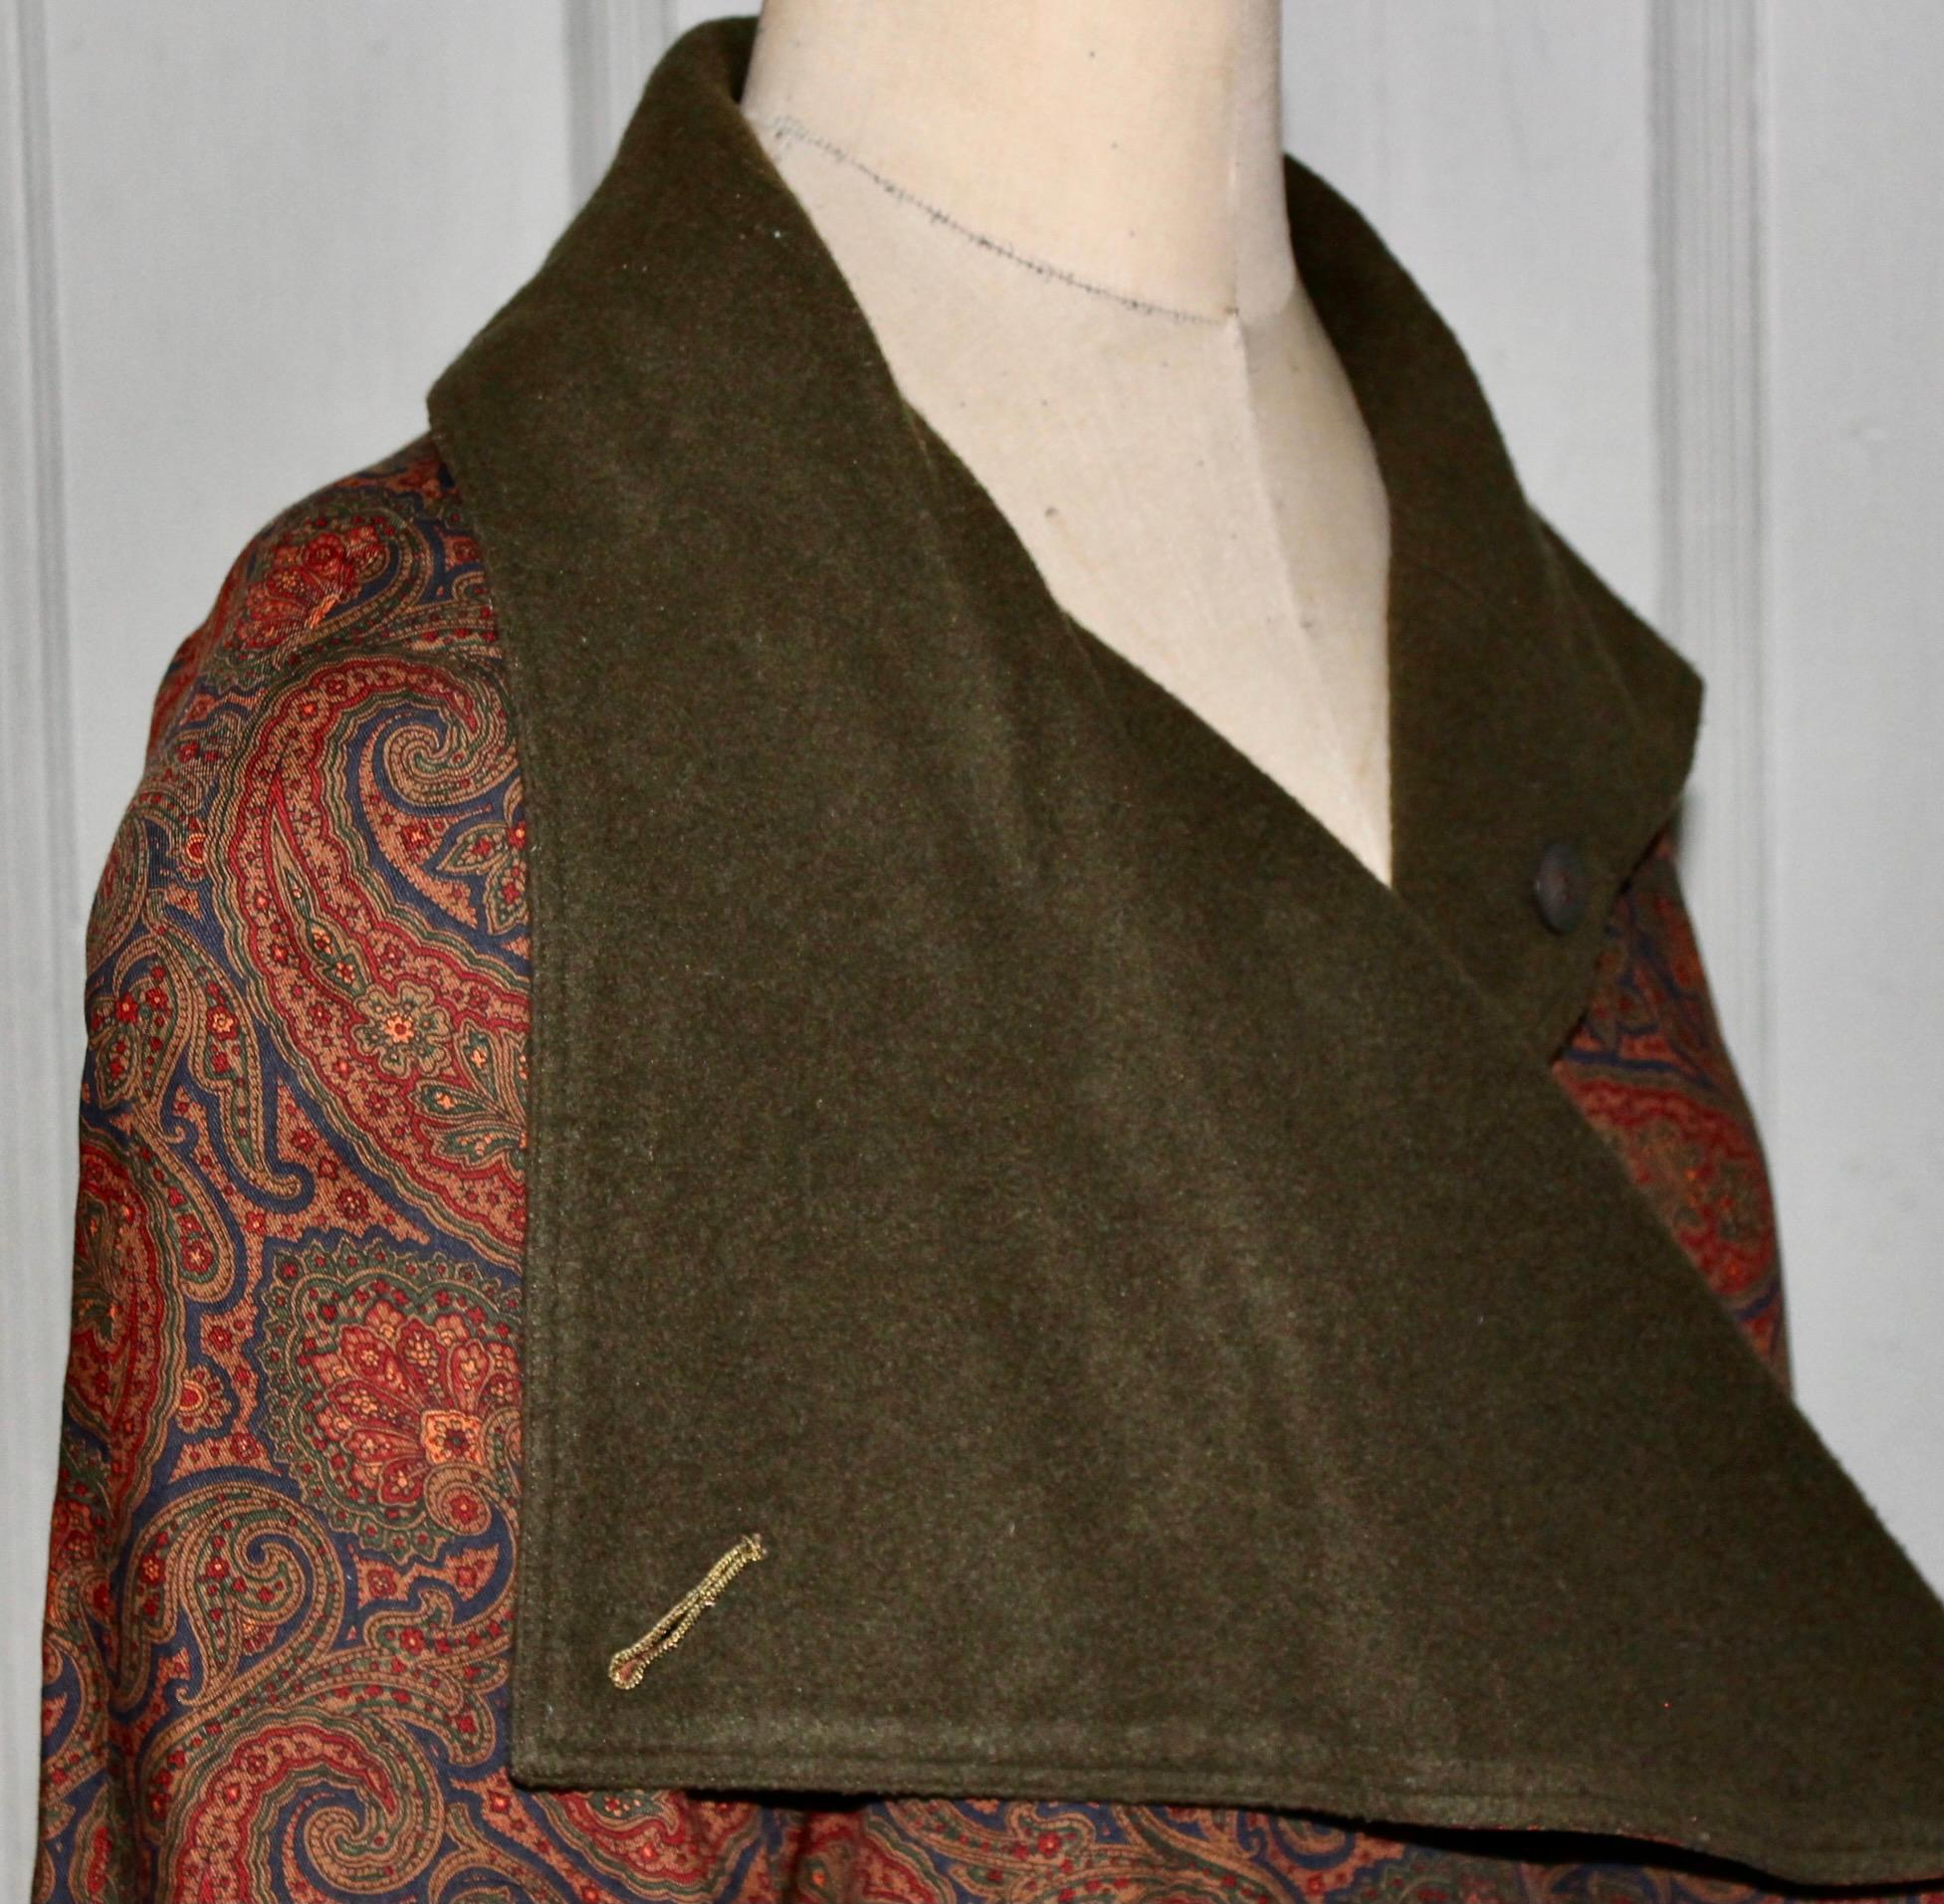 Bill Blass Paisley Edwardian Style Dress Coat 5